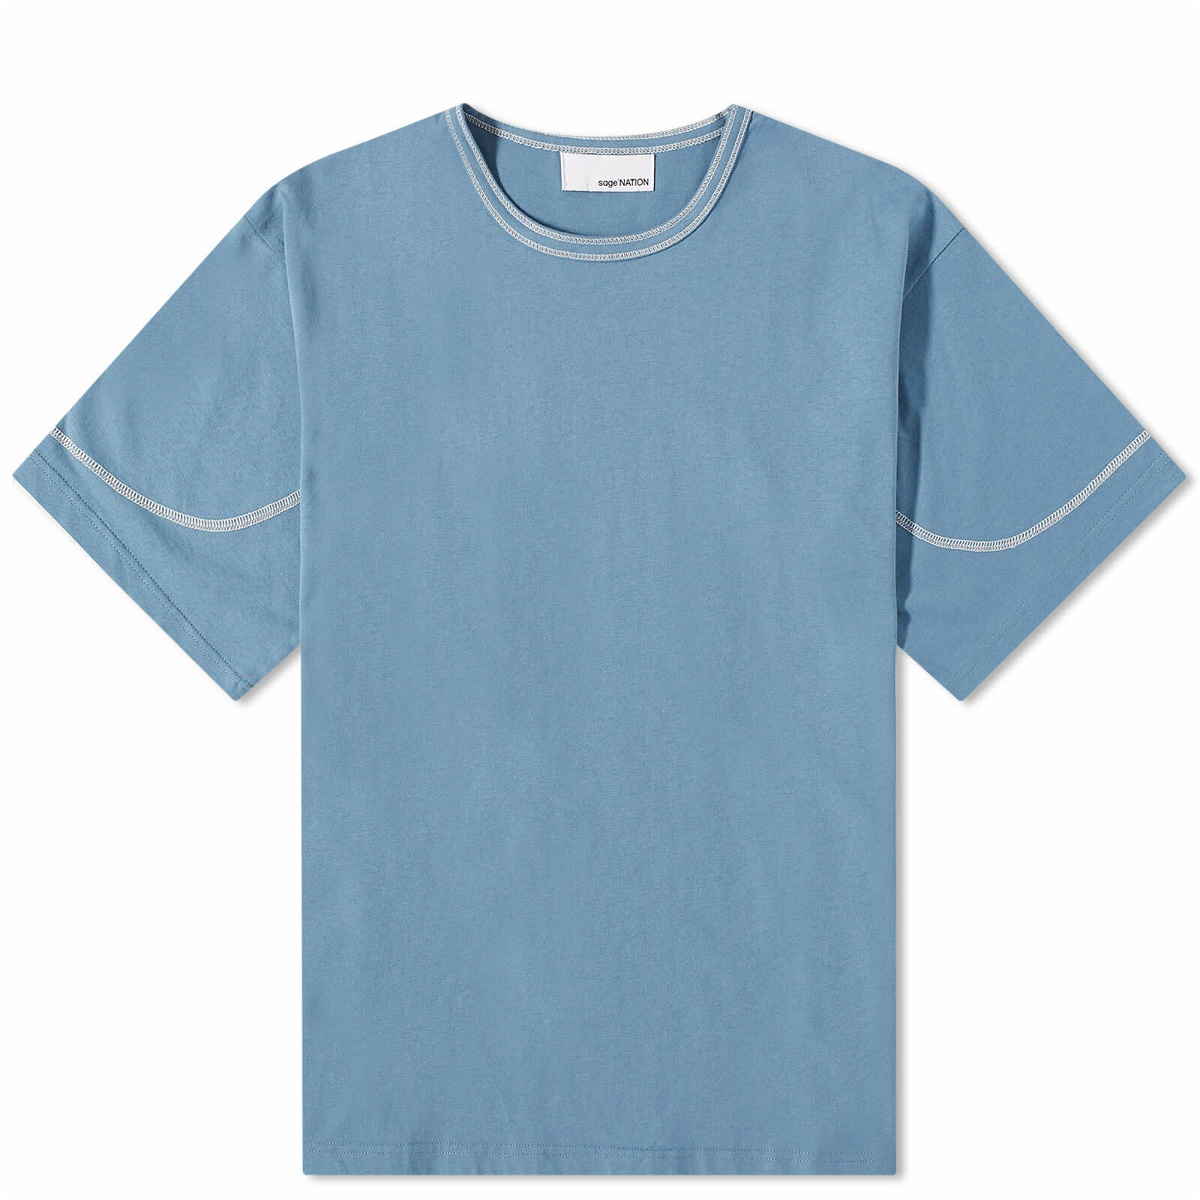 Sage Nation Men's Short Sleeve T-Shirt in Azure Blue